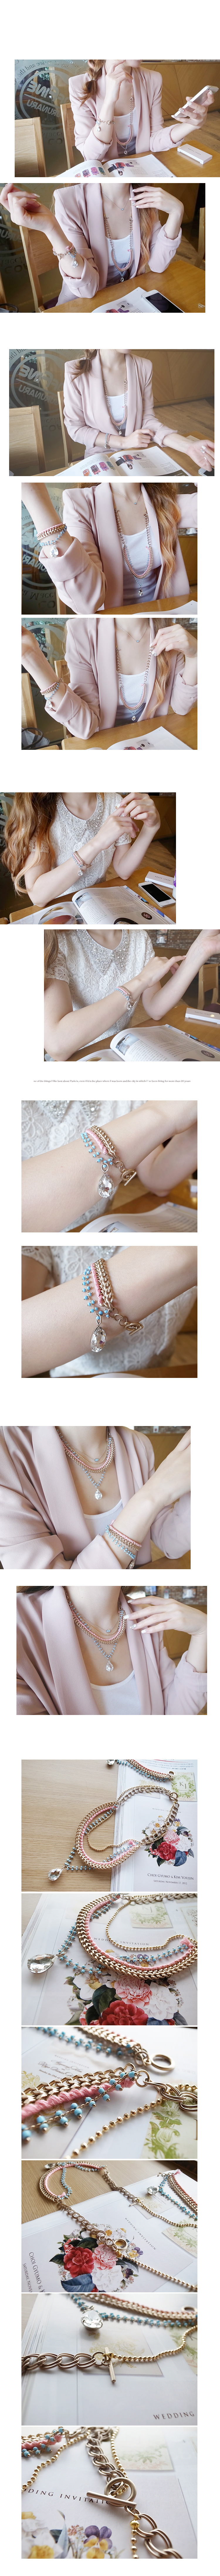 韓國 NaniWorld 項鍊手環兩用水滴鑽石氛圍飾品 #2209